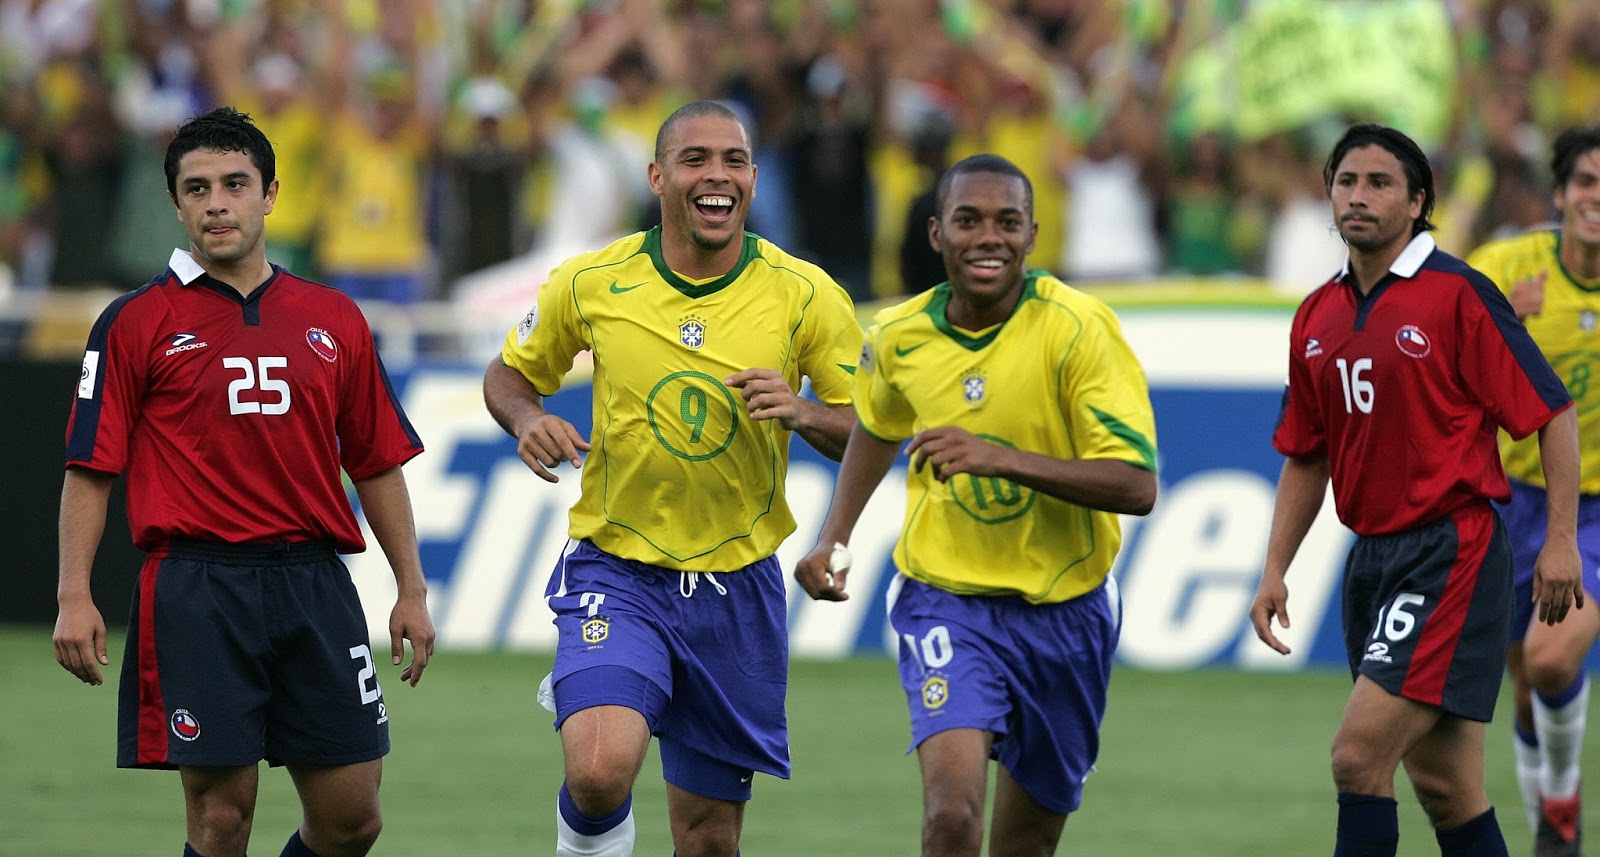 Brasil Chile Clasificatorias Alemania 2006 4 Septiembre 2005